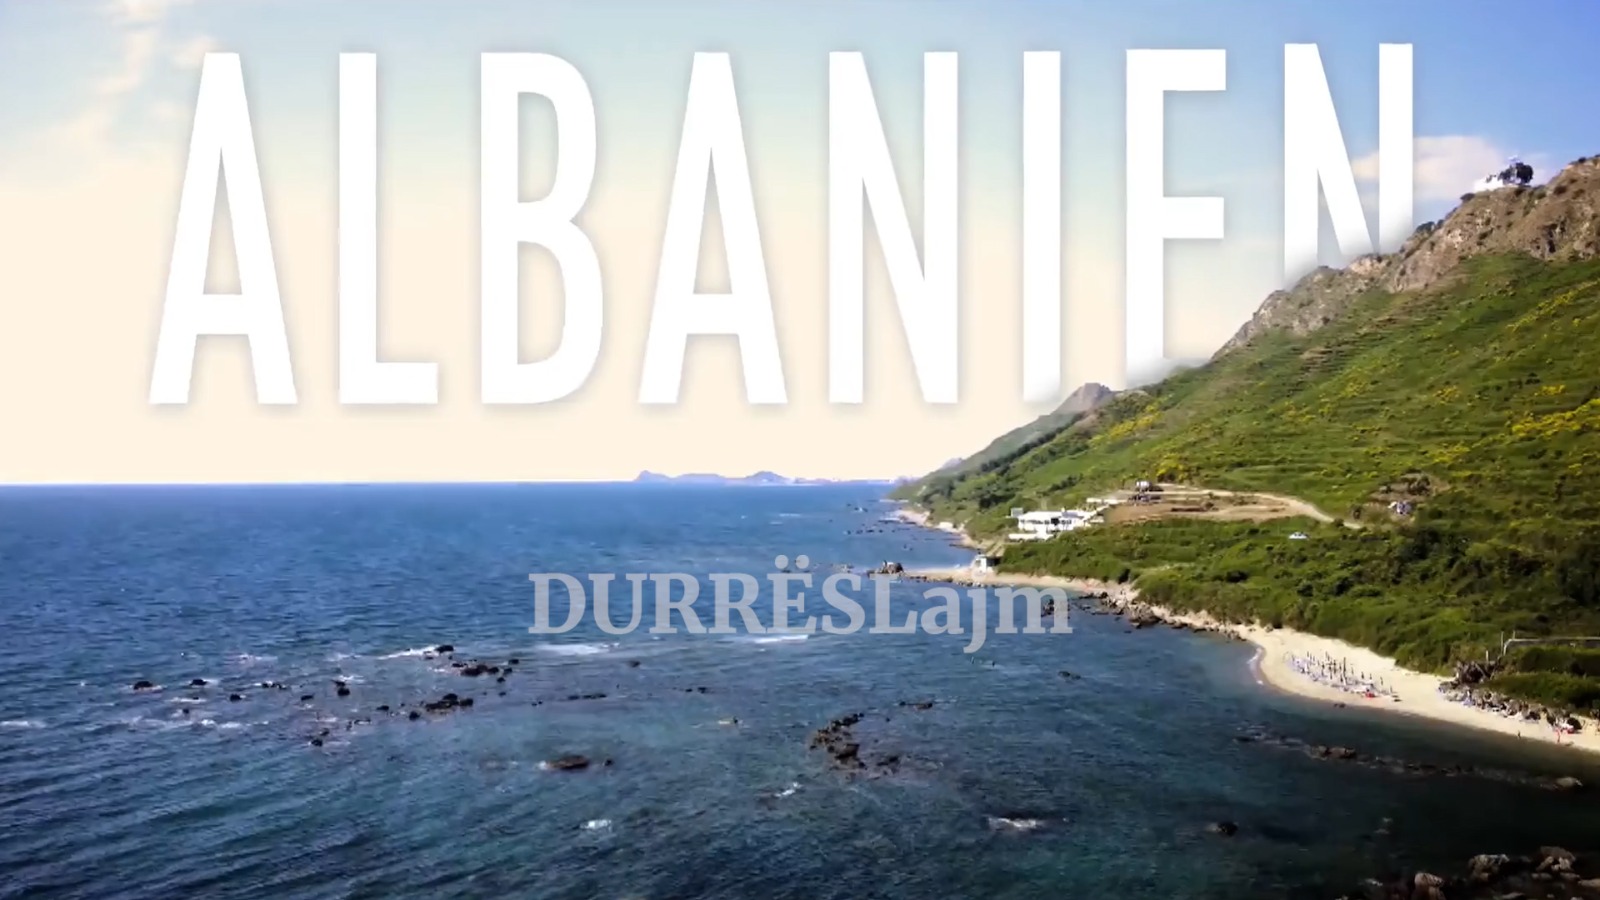 Televizioni gjerman RTL reportazh për Durrësin:  Destinacion që ia vlen ta vizitosh! (VIDEO)